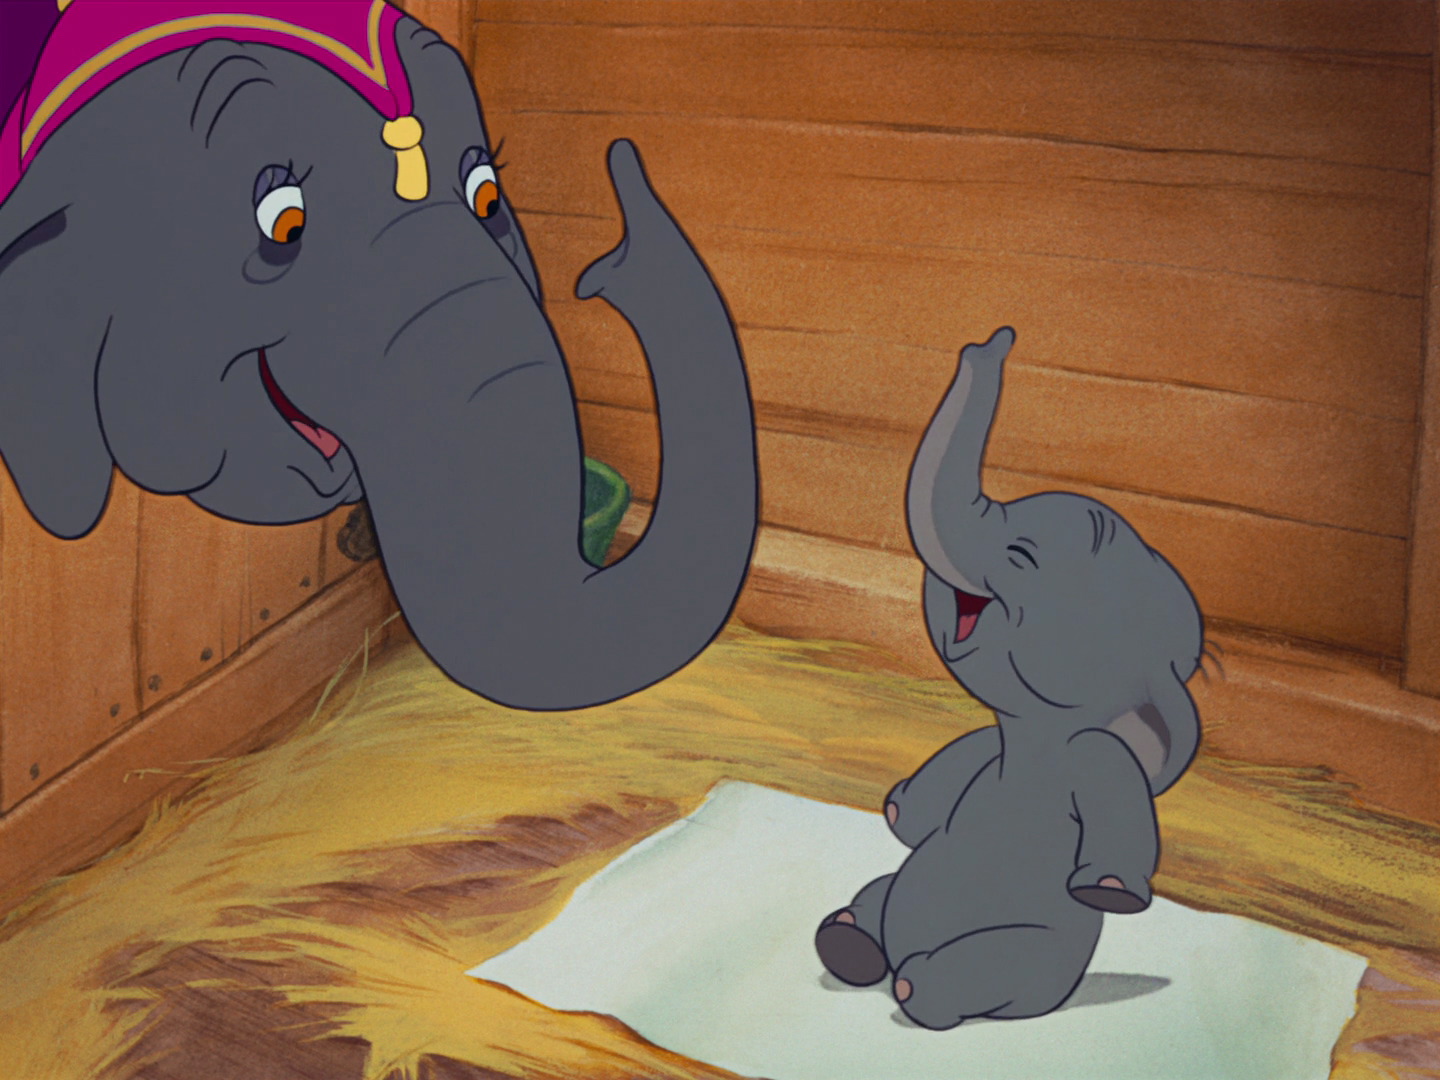 Dumbo #10